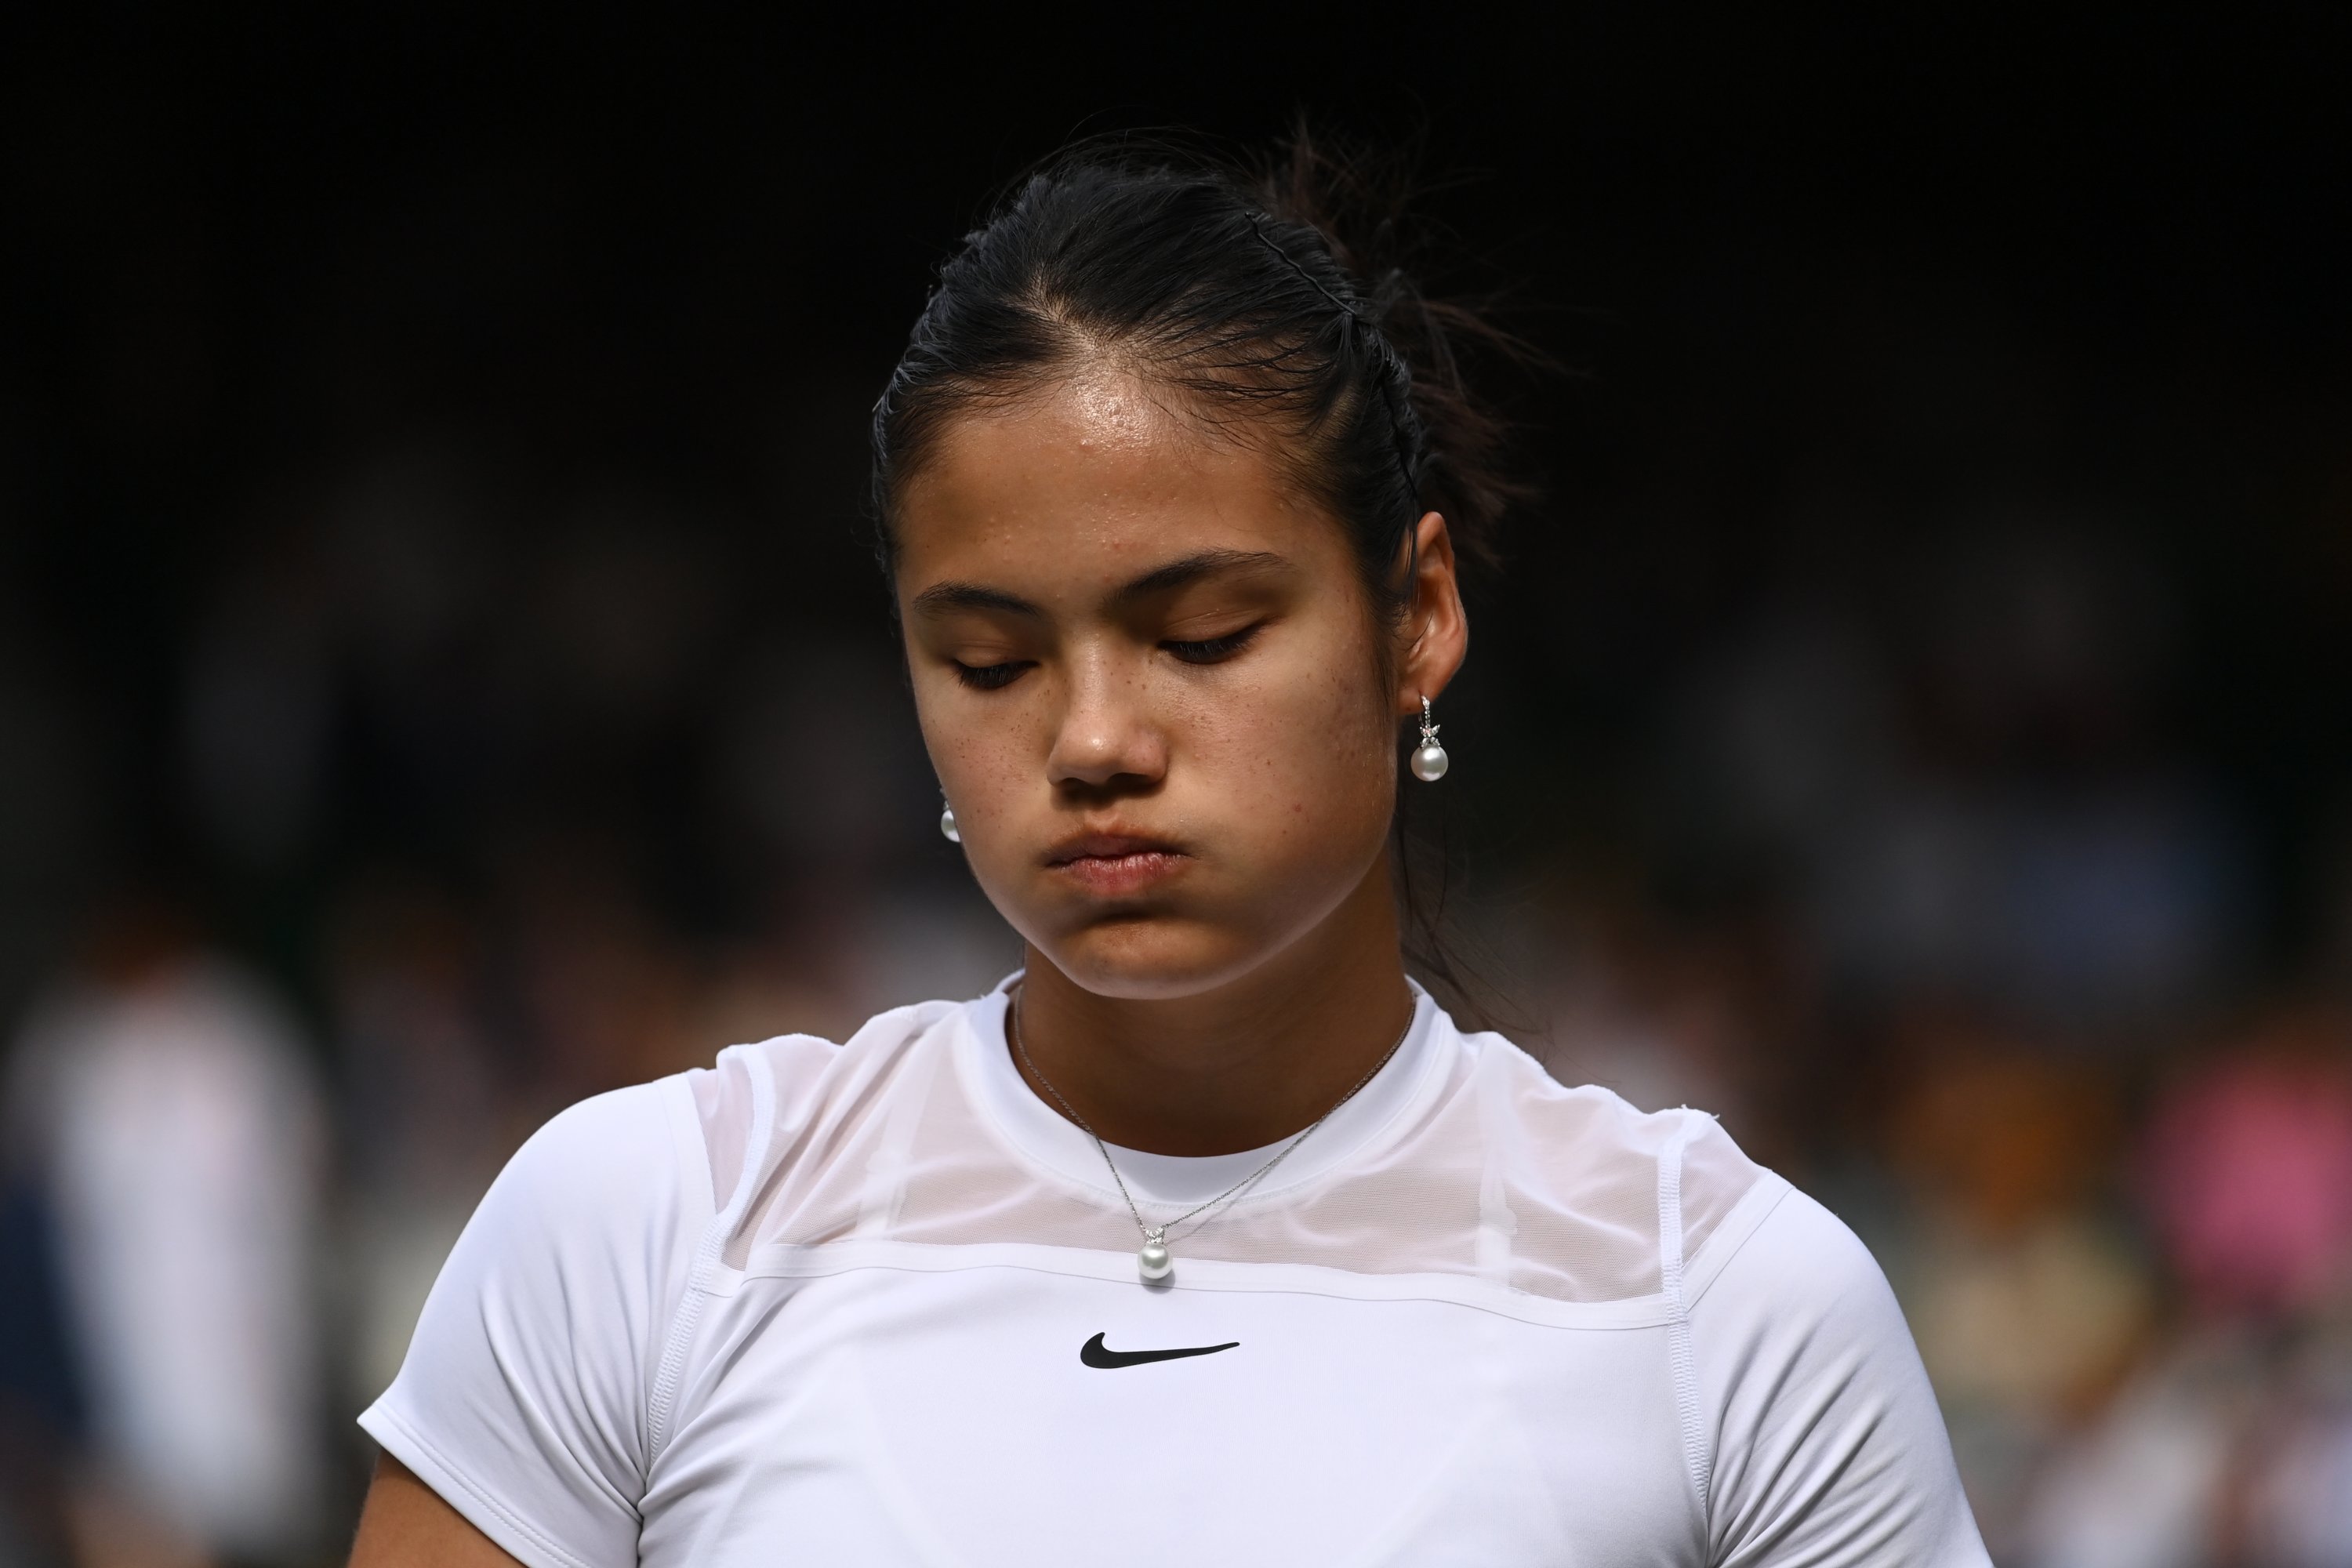 Emma Raducanu bereaksi setelah kalah dalam pertandingan putaran kedua Wimbledon melawan Caroline Garcia, London, Inggris, 29 Juni 2022. (AA Photo)